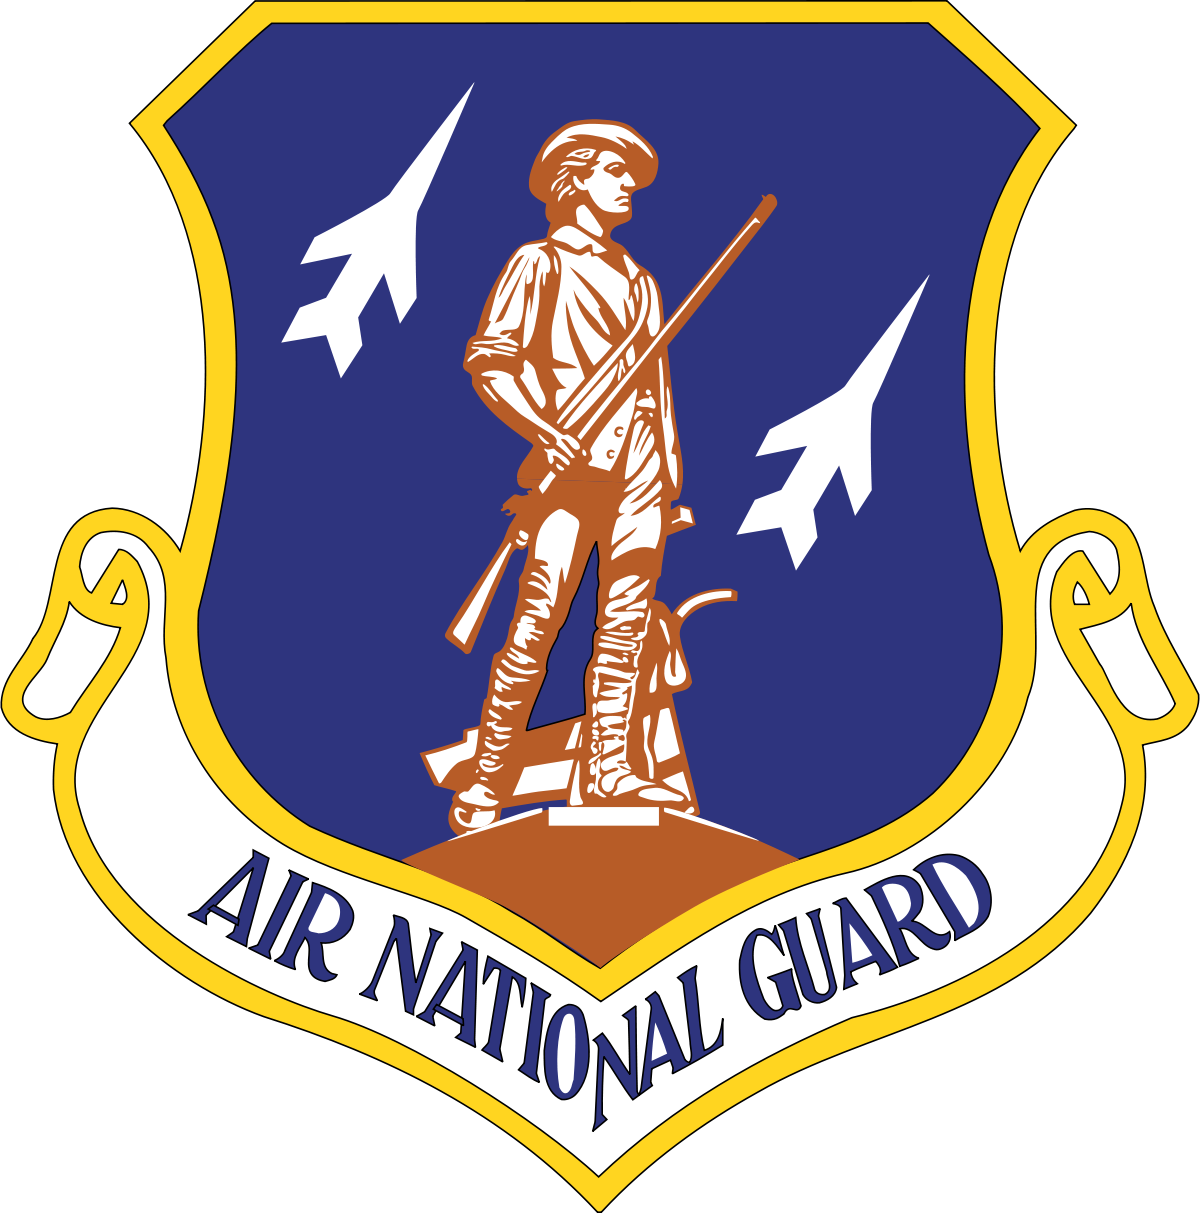 army aer logo